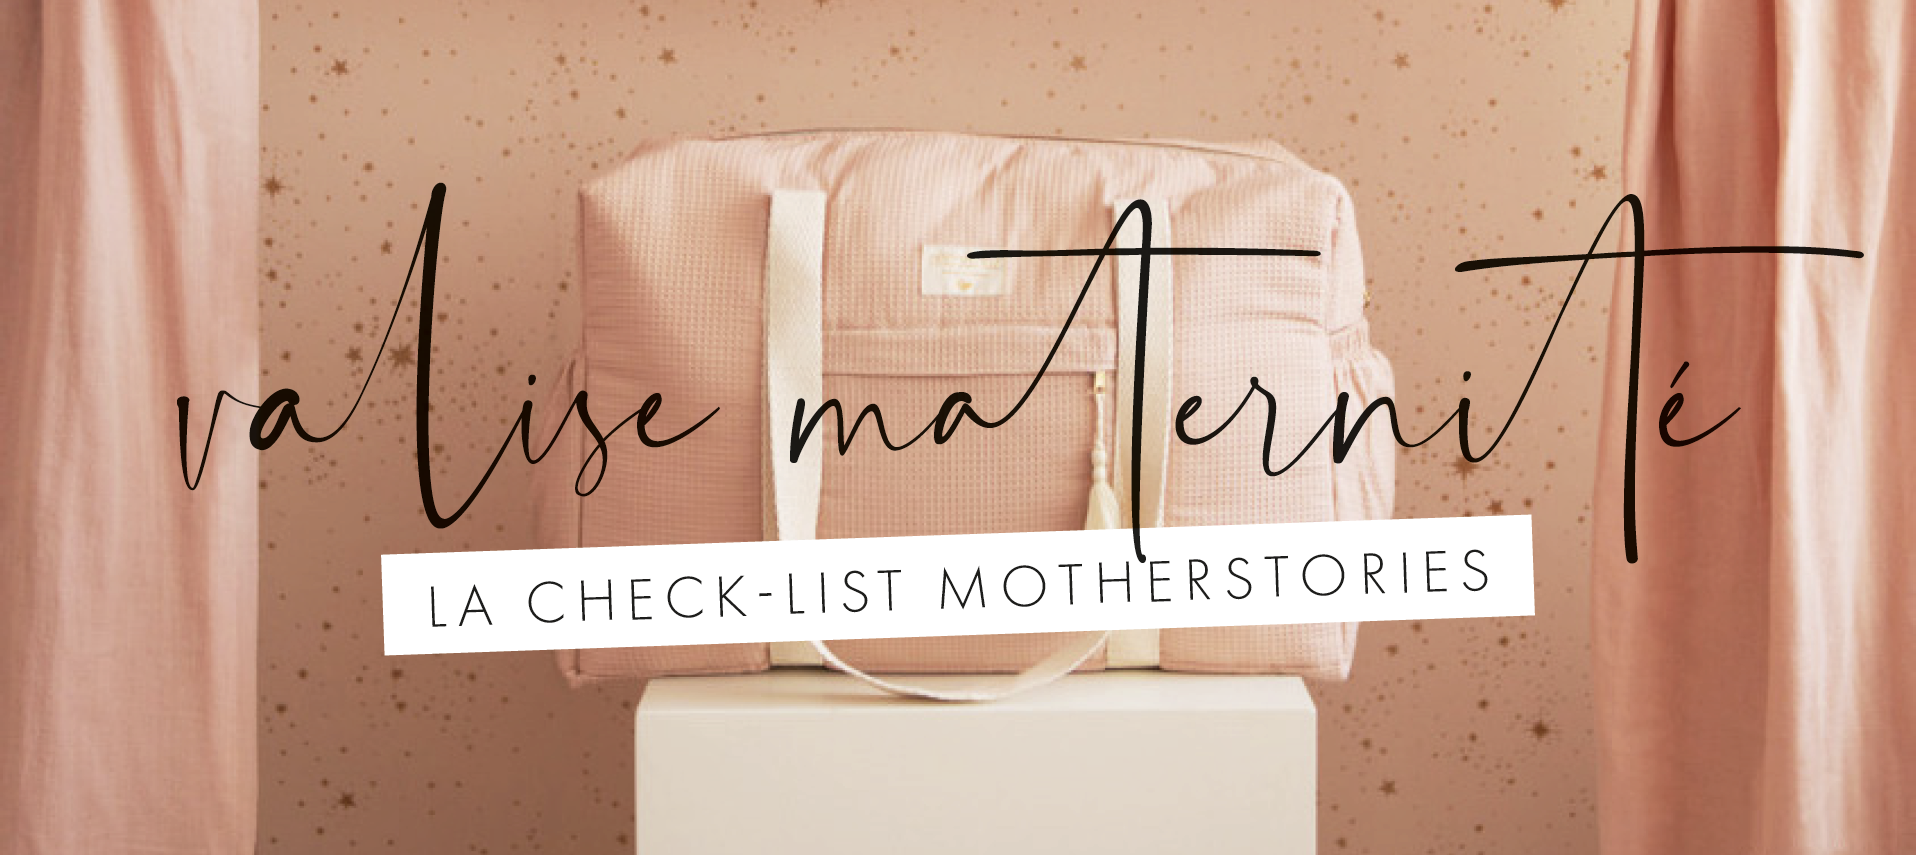 Checklist valise pour la maternité à télécharger